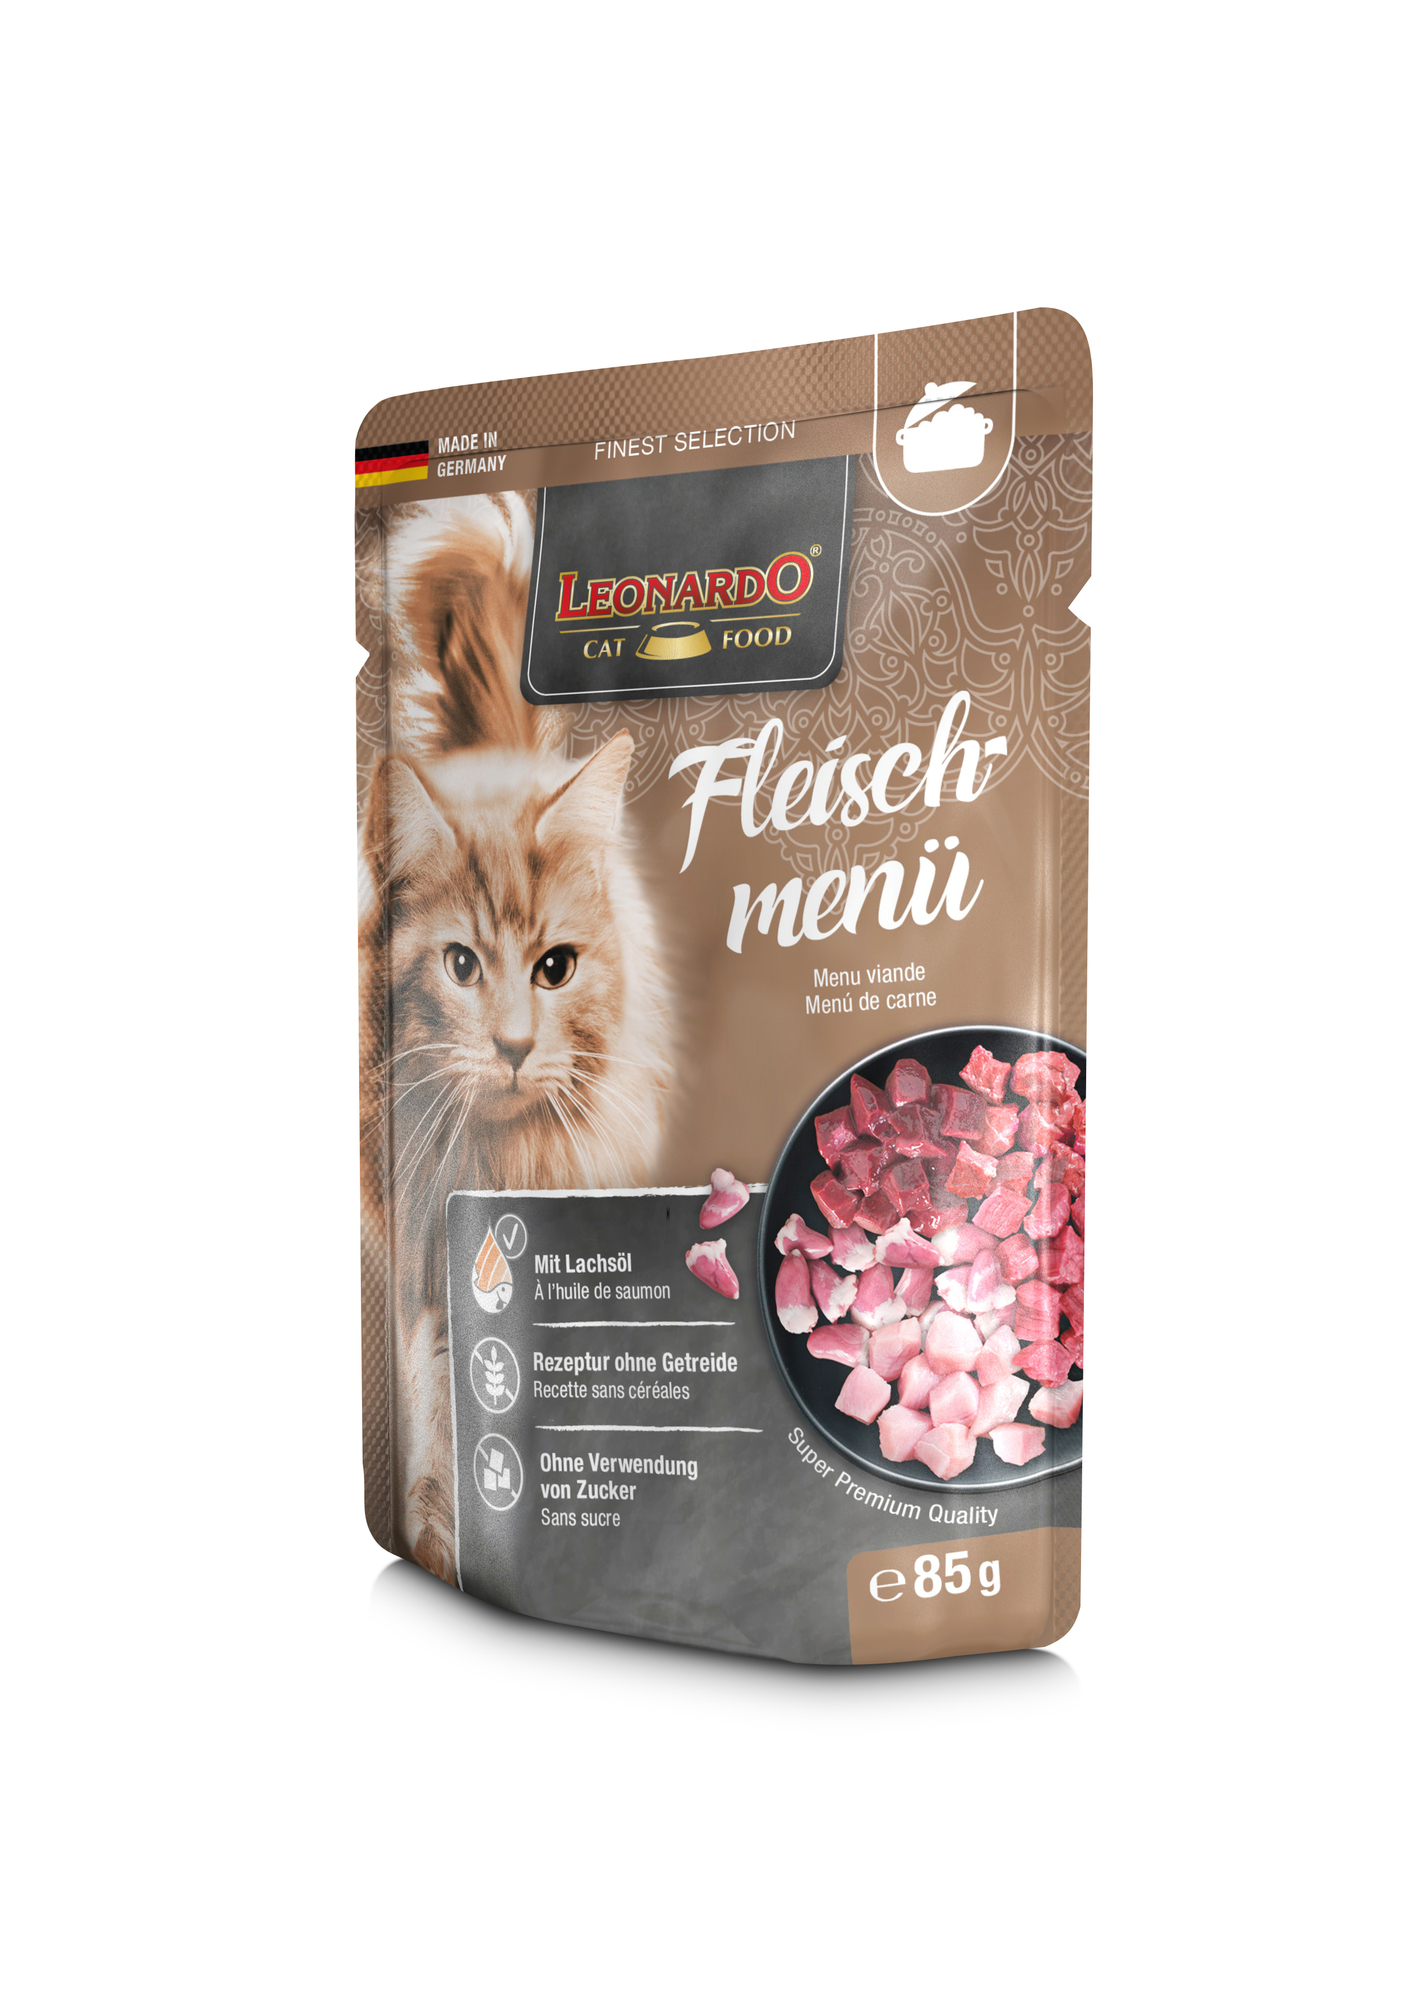 Leonardo Finest Selection em saco para gatos adultos - 3 sabores à escolha